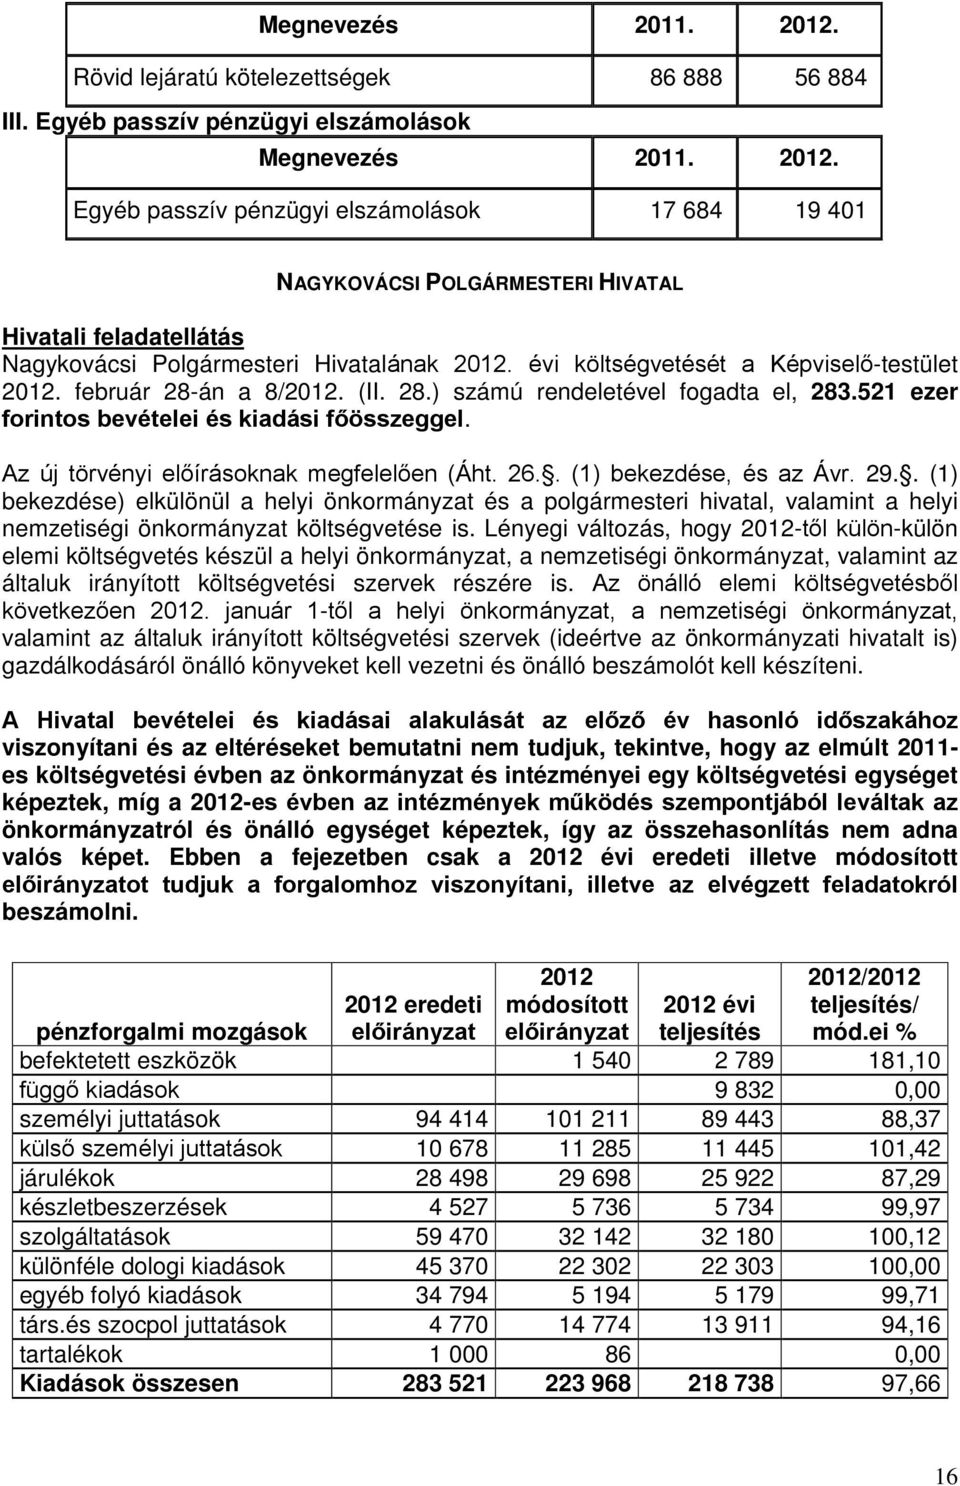 évi költségvetését a Képviselő-testület 2012. február 28-án a 8/2012. (II. 28.) számú rendeletével fogadta el, 283.521 ezer forintos bevételei és kiadási főösszeggel.